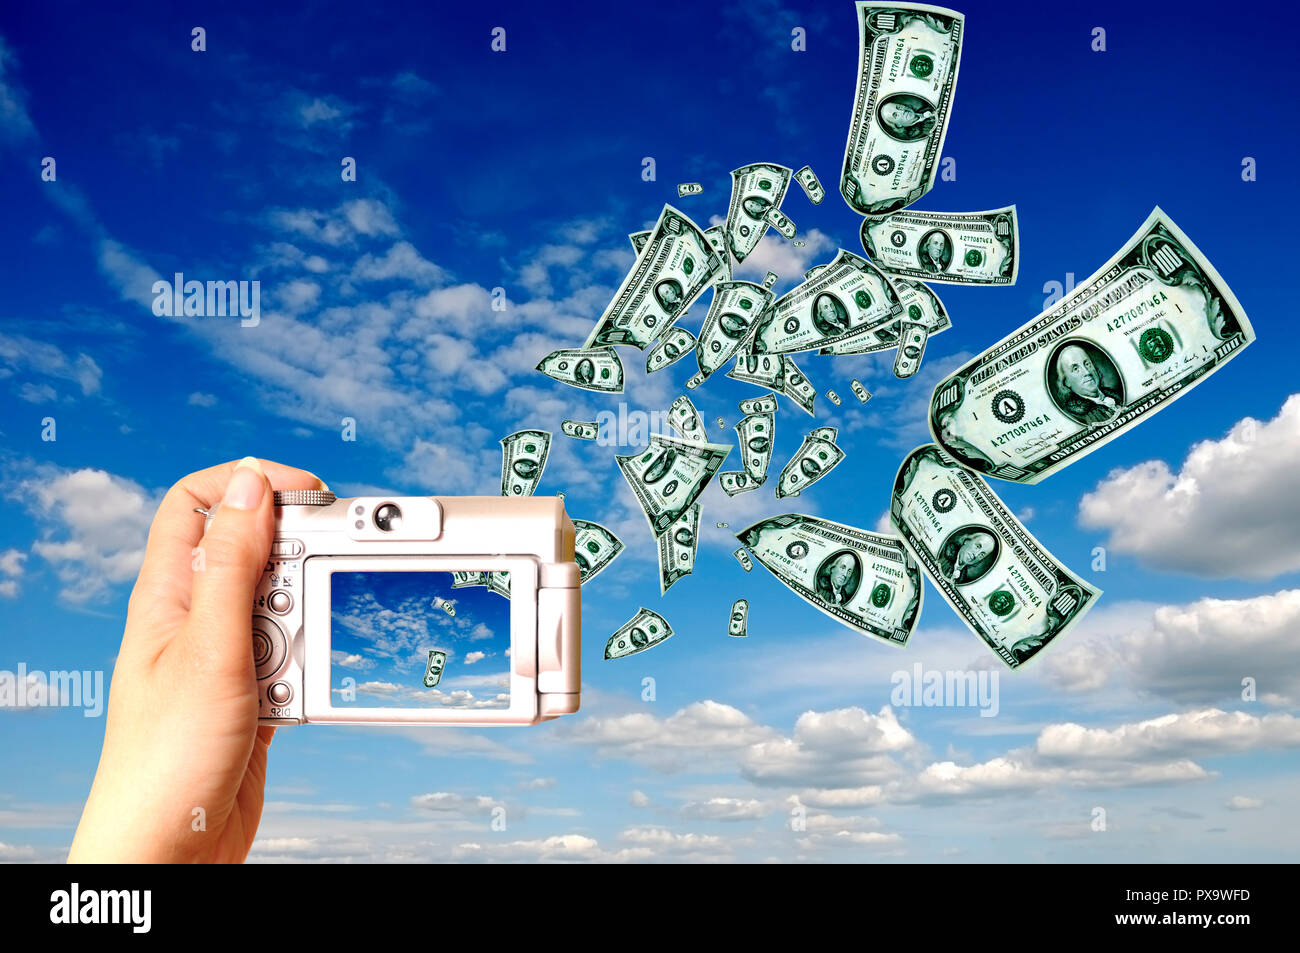 Geld verdienen mit Fotografie Konzept Stockfotografie - Alamy